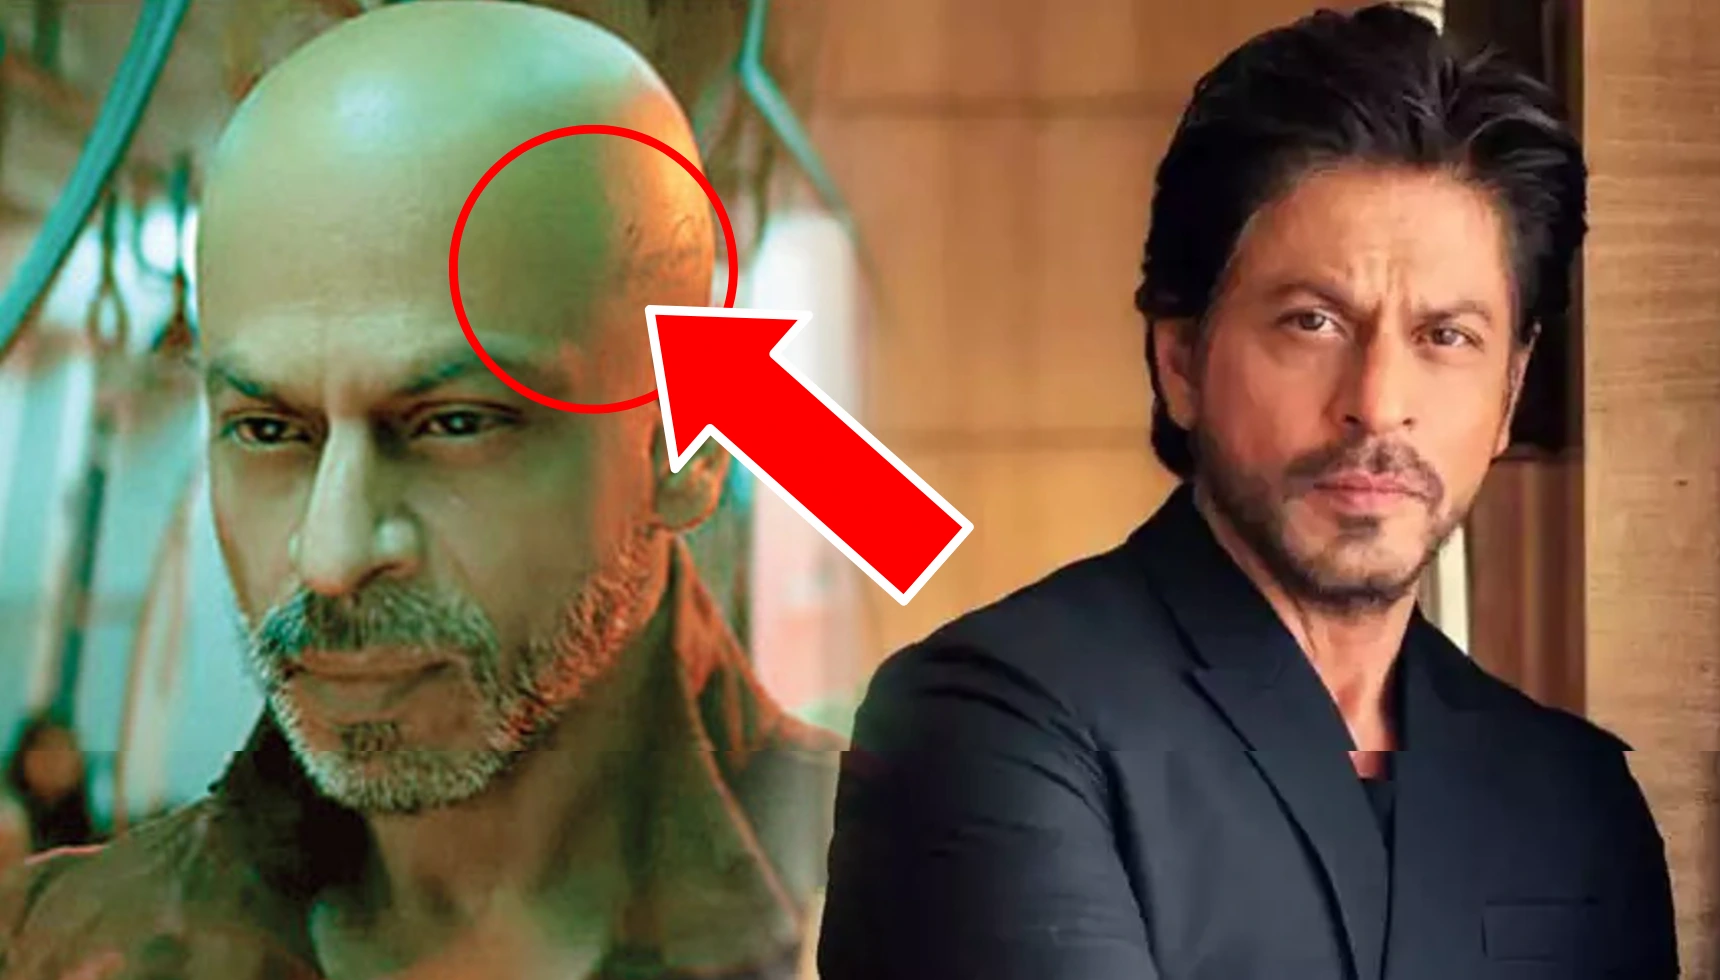 जवन क परवय म दख शहरख क सर पर टट कय लख ह समझ आप  Shah  Rukh Khan head Tattoo in bald look of Jawan prevue decoded Find out what it